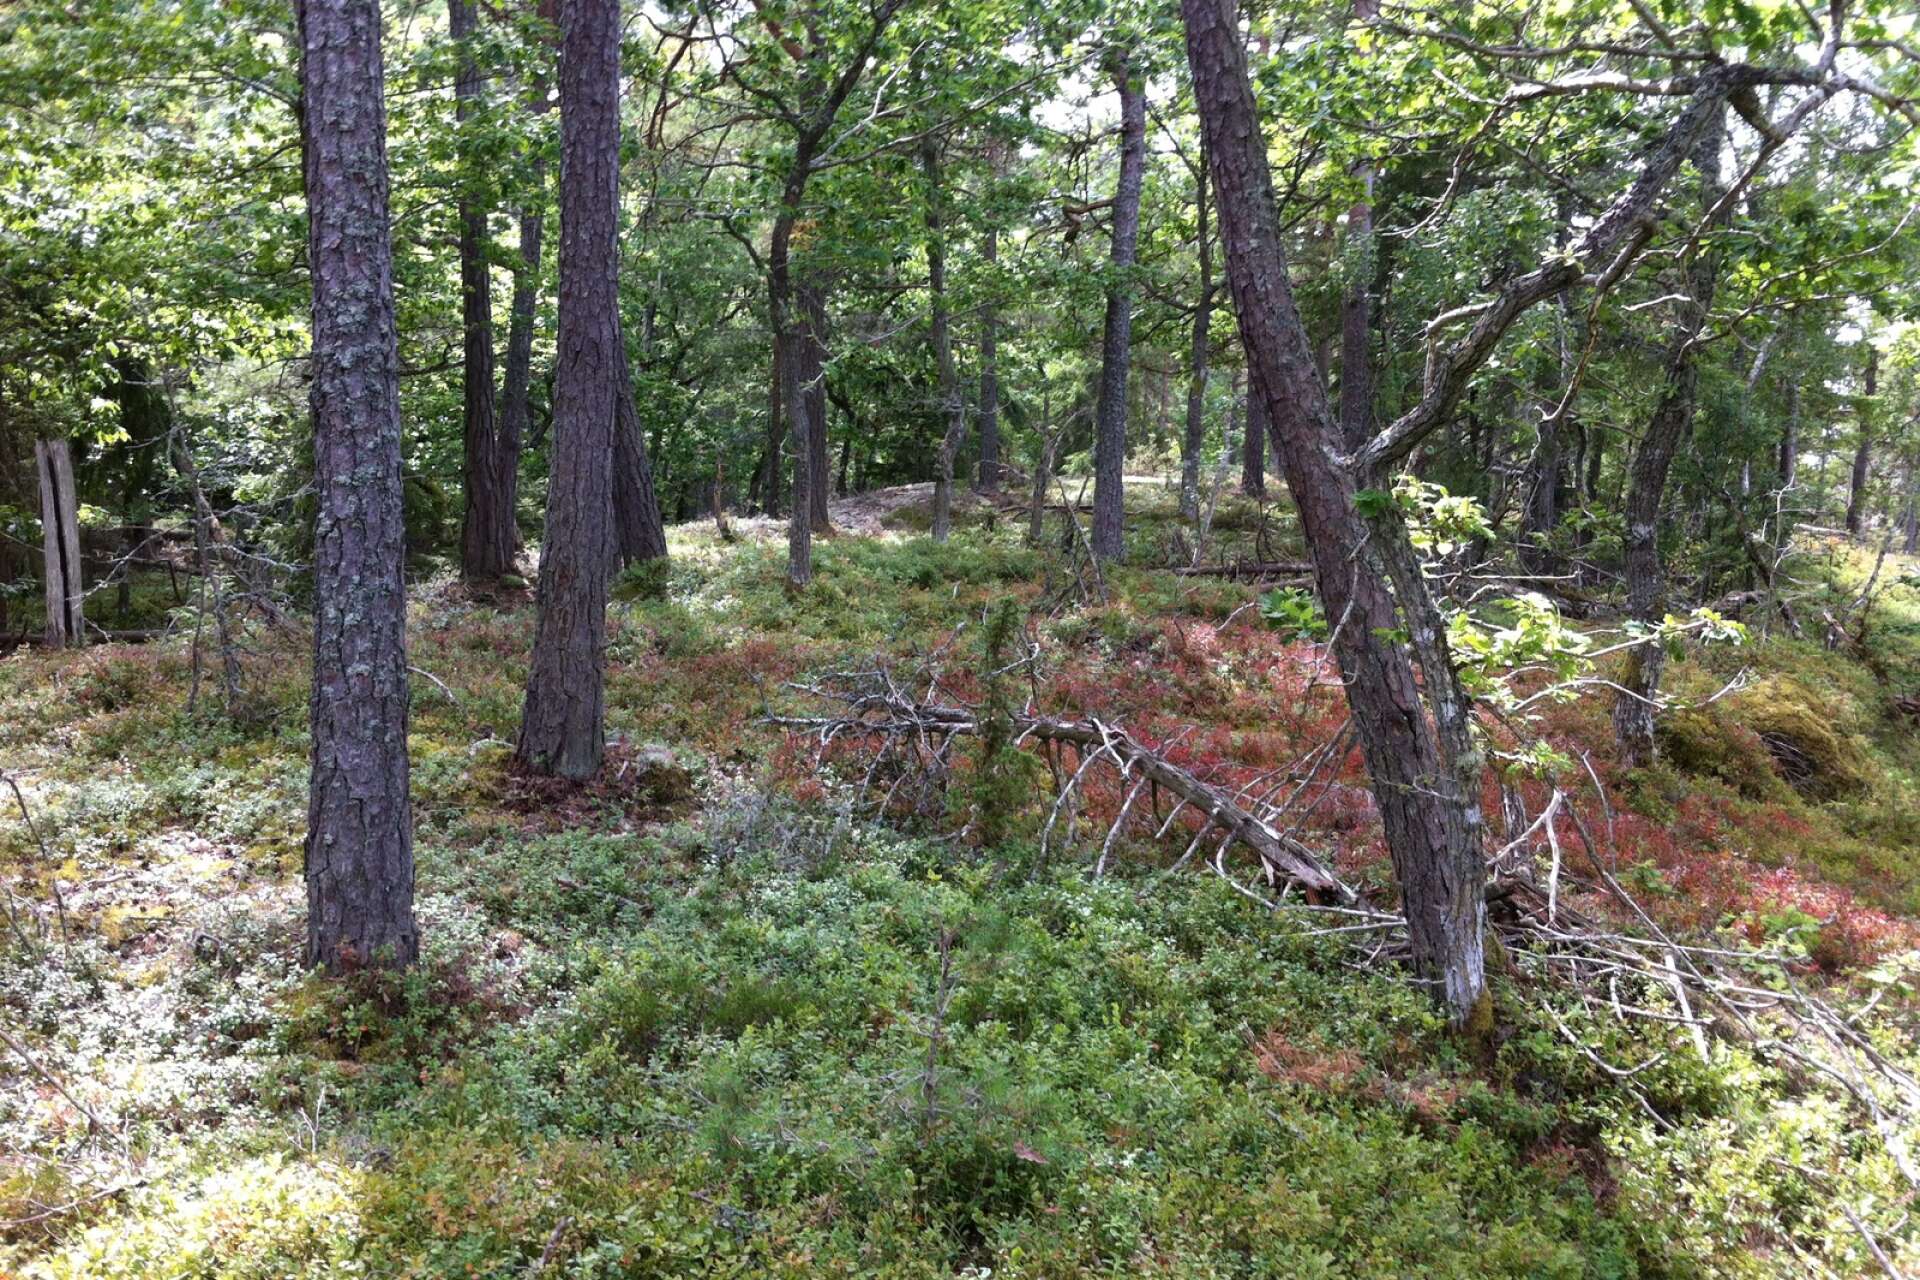 Beslutet om att bilda naturreservat vid Kållands skärgårdar kommer att dröja. Enligt Örjan Nilsson är det sannolikt att staten fattar det formella beslutet år 2025 eller 2026. På bild ön Klitt, som idag är en del av naturvårdsområdet och som kommer att ingå i det kommande beslutet om naturreservatet. 